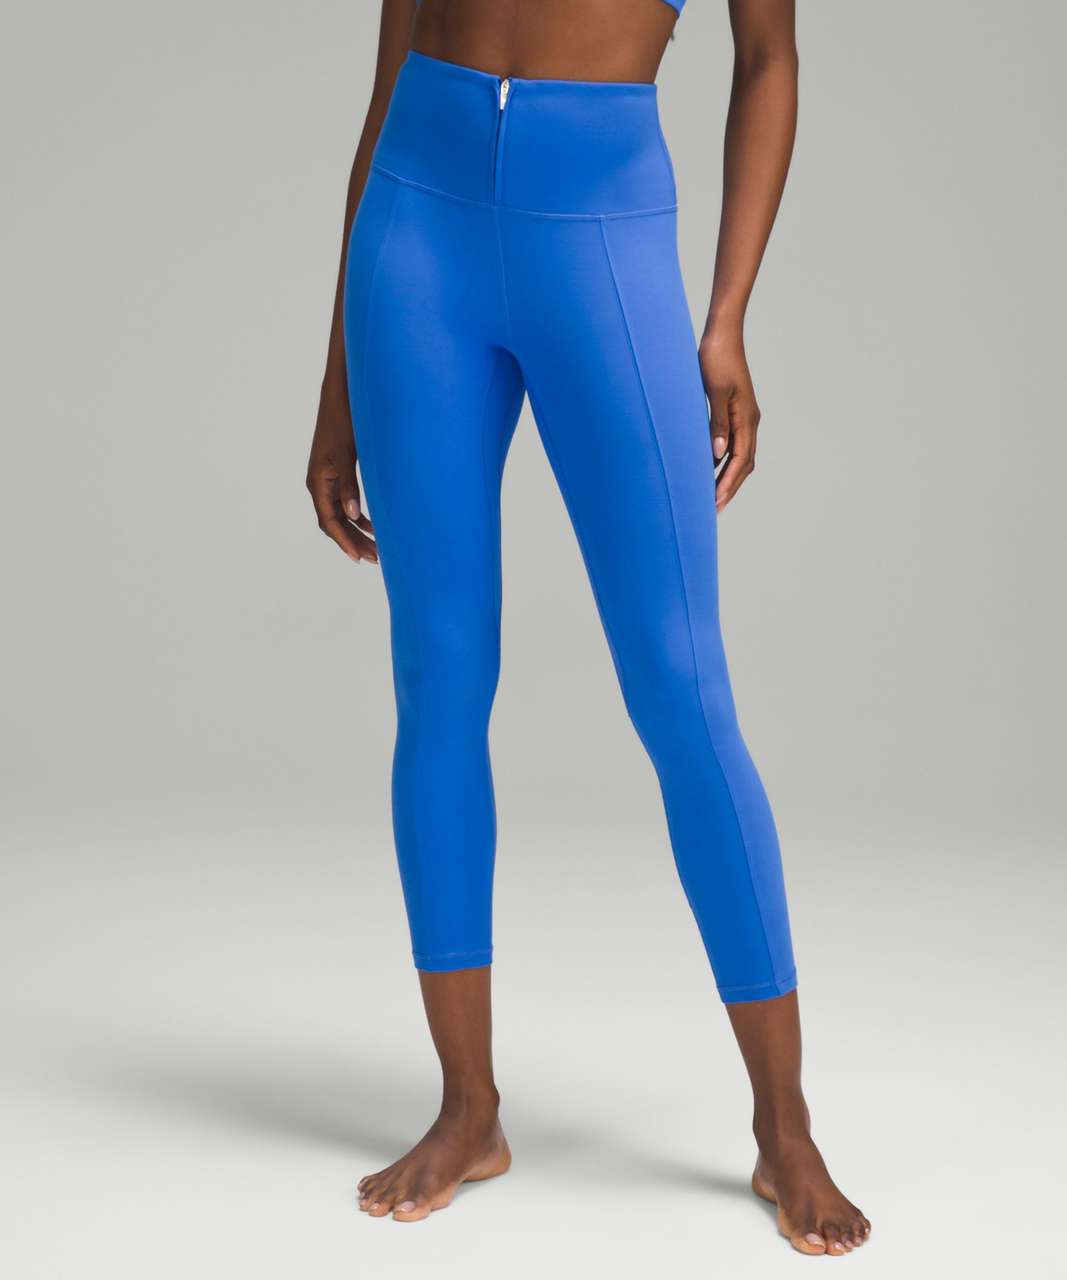 Blue lululemon align leggings 25 inseam, size 2. - Depop